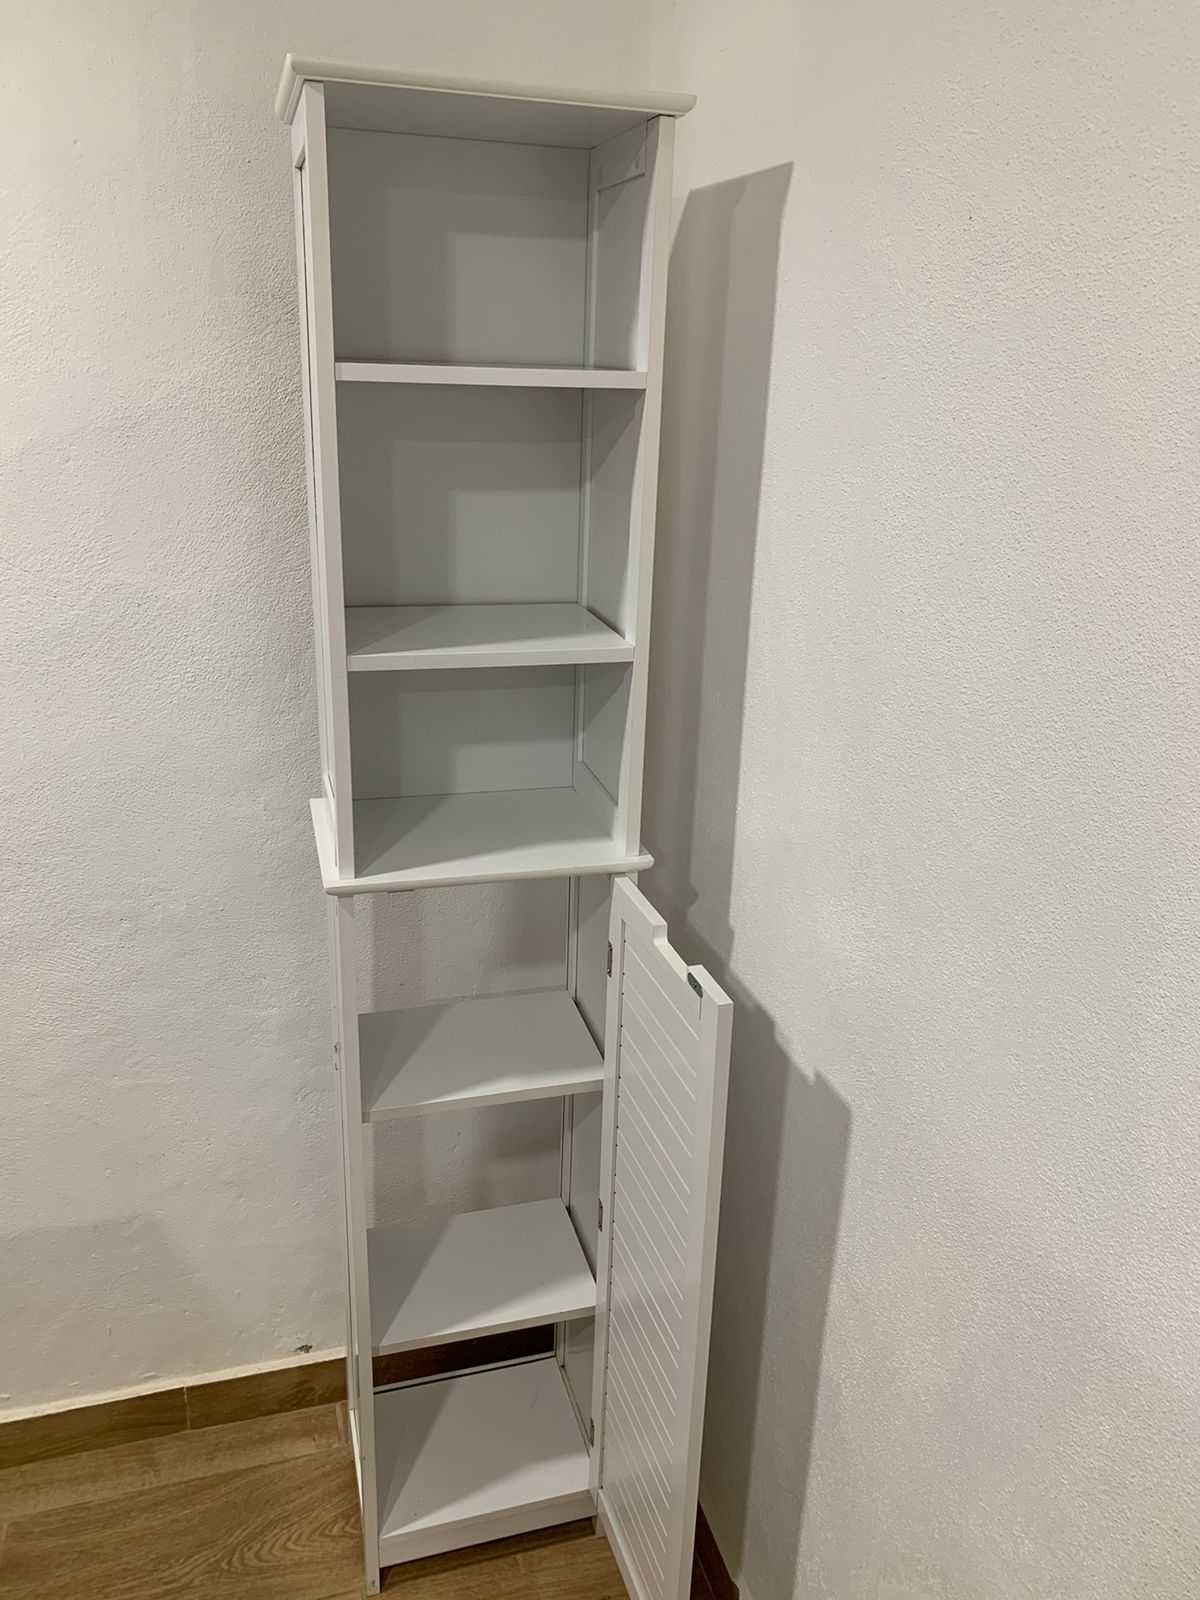 Móveis brancos da Ikea.